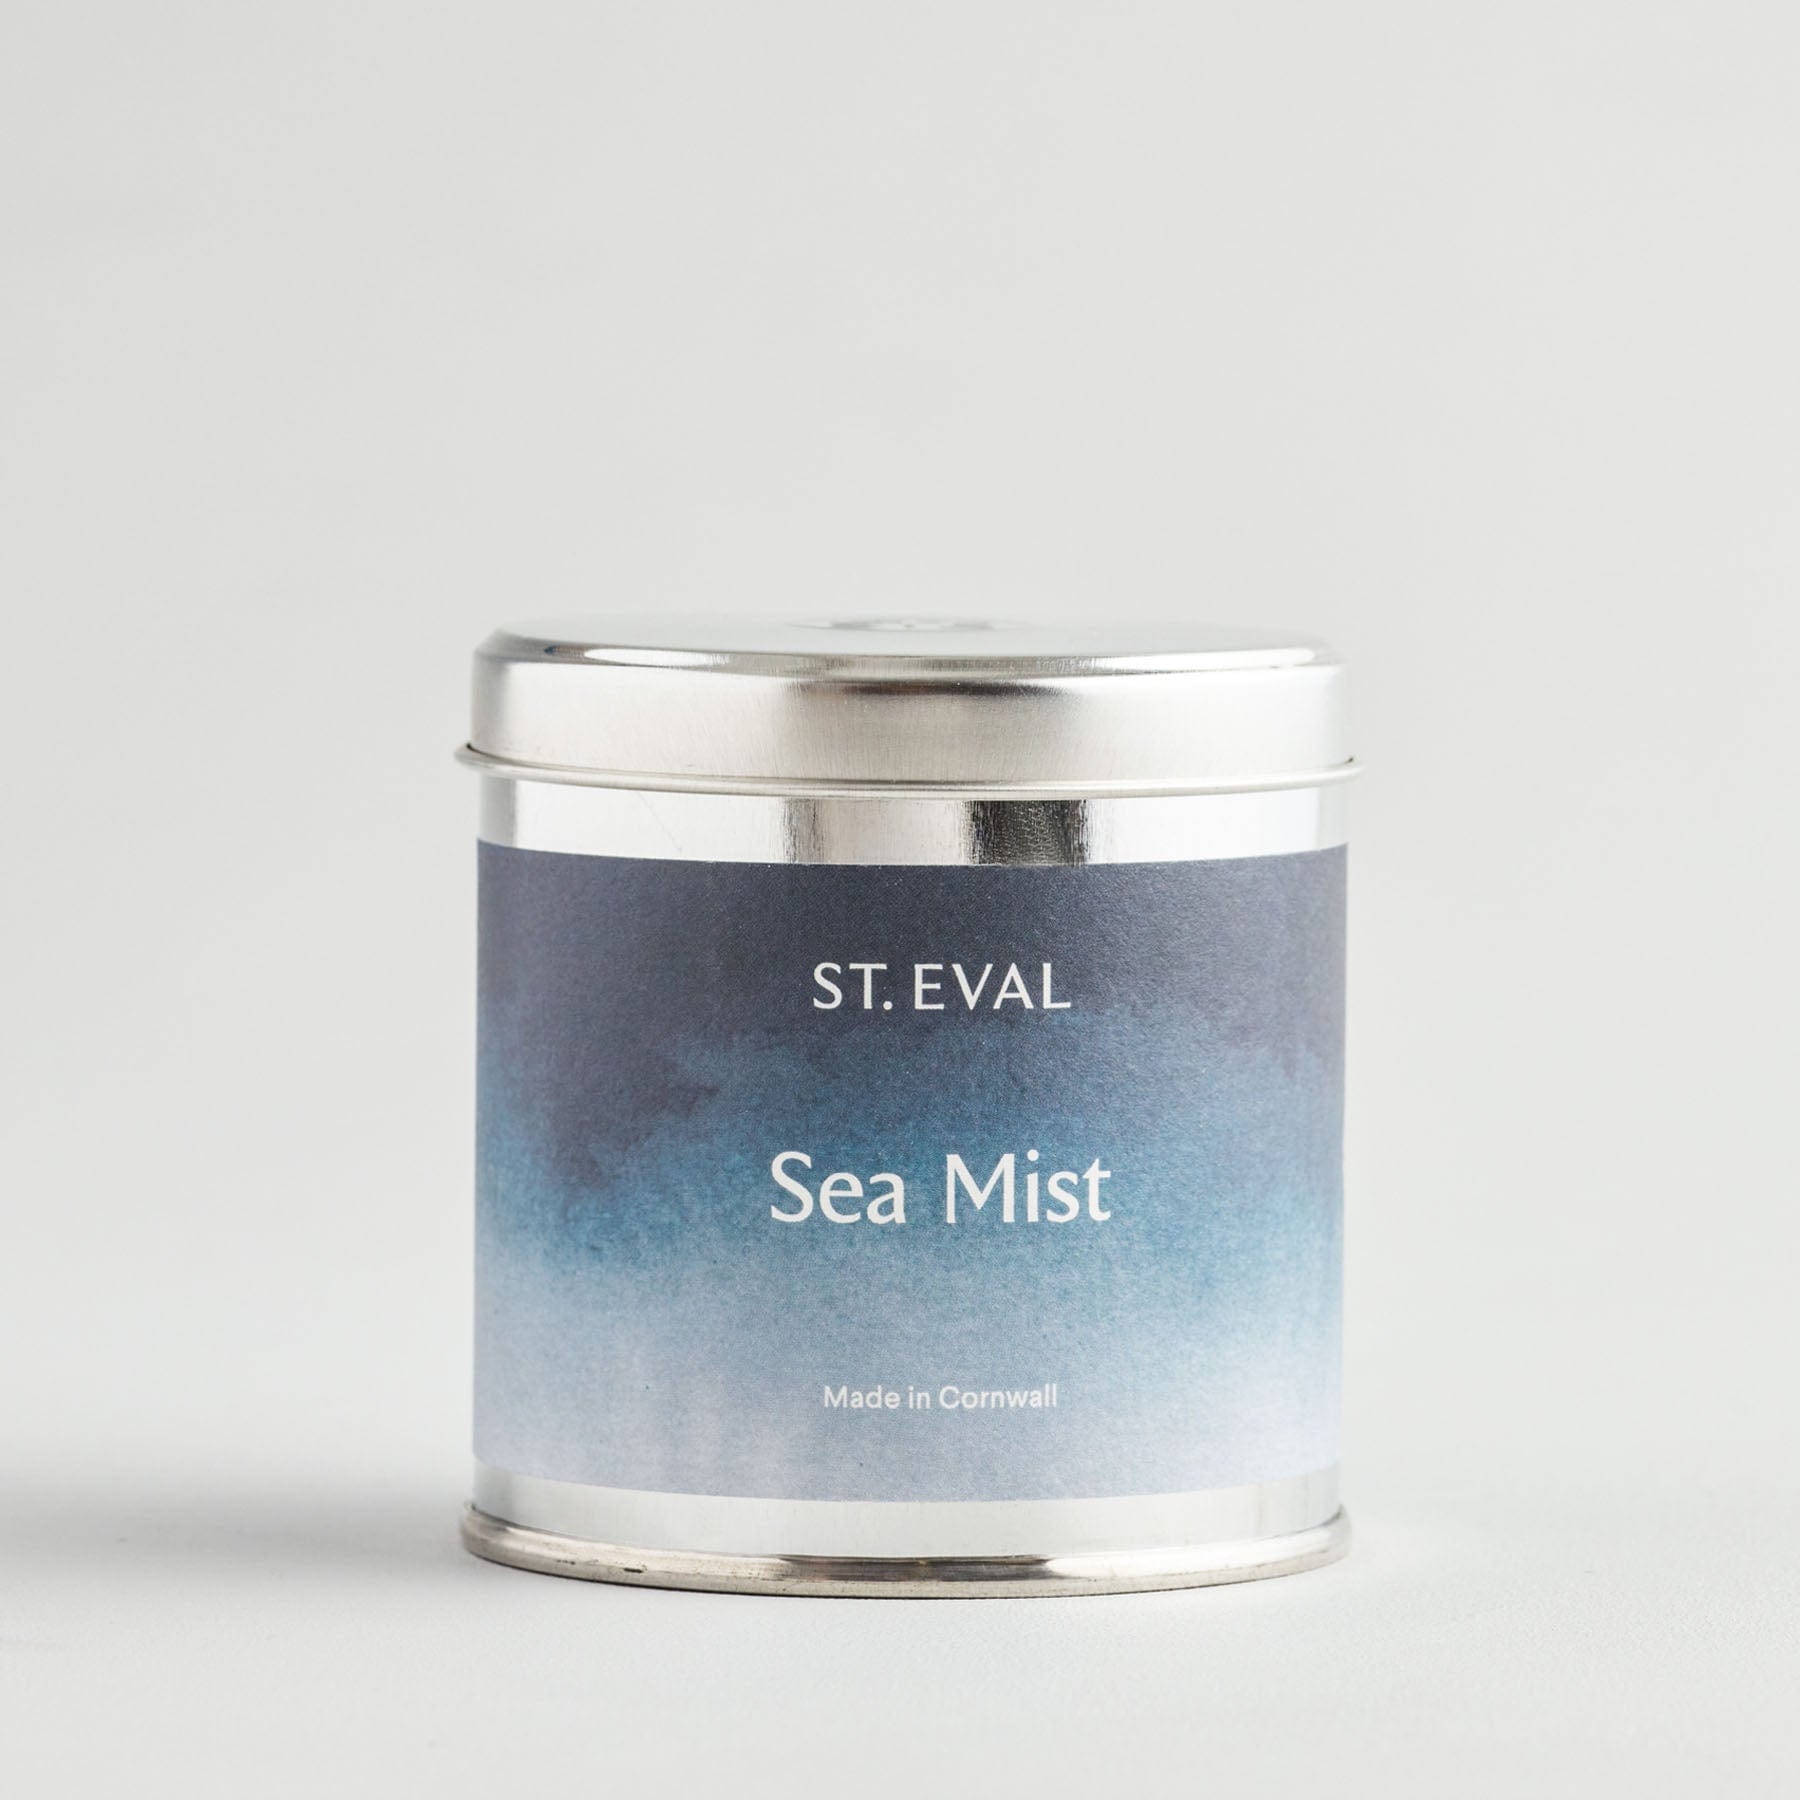 Sea mist coastal scented tin candle